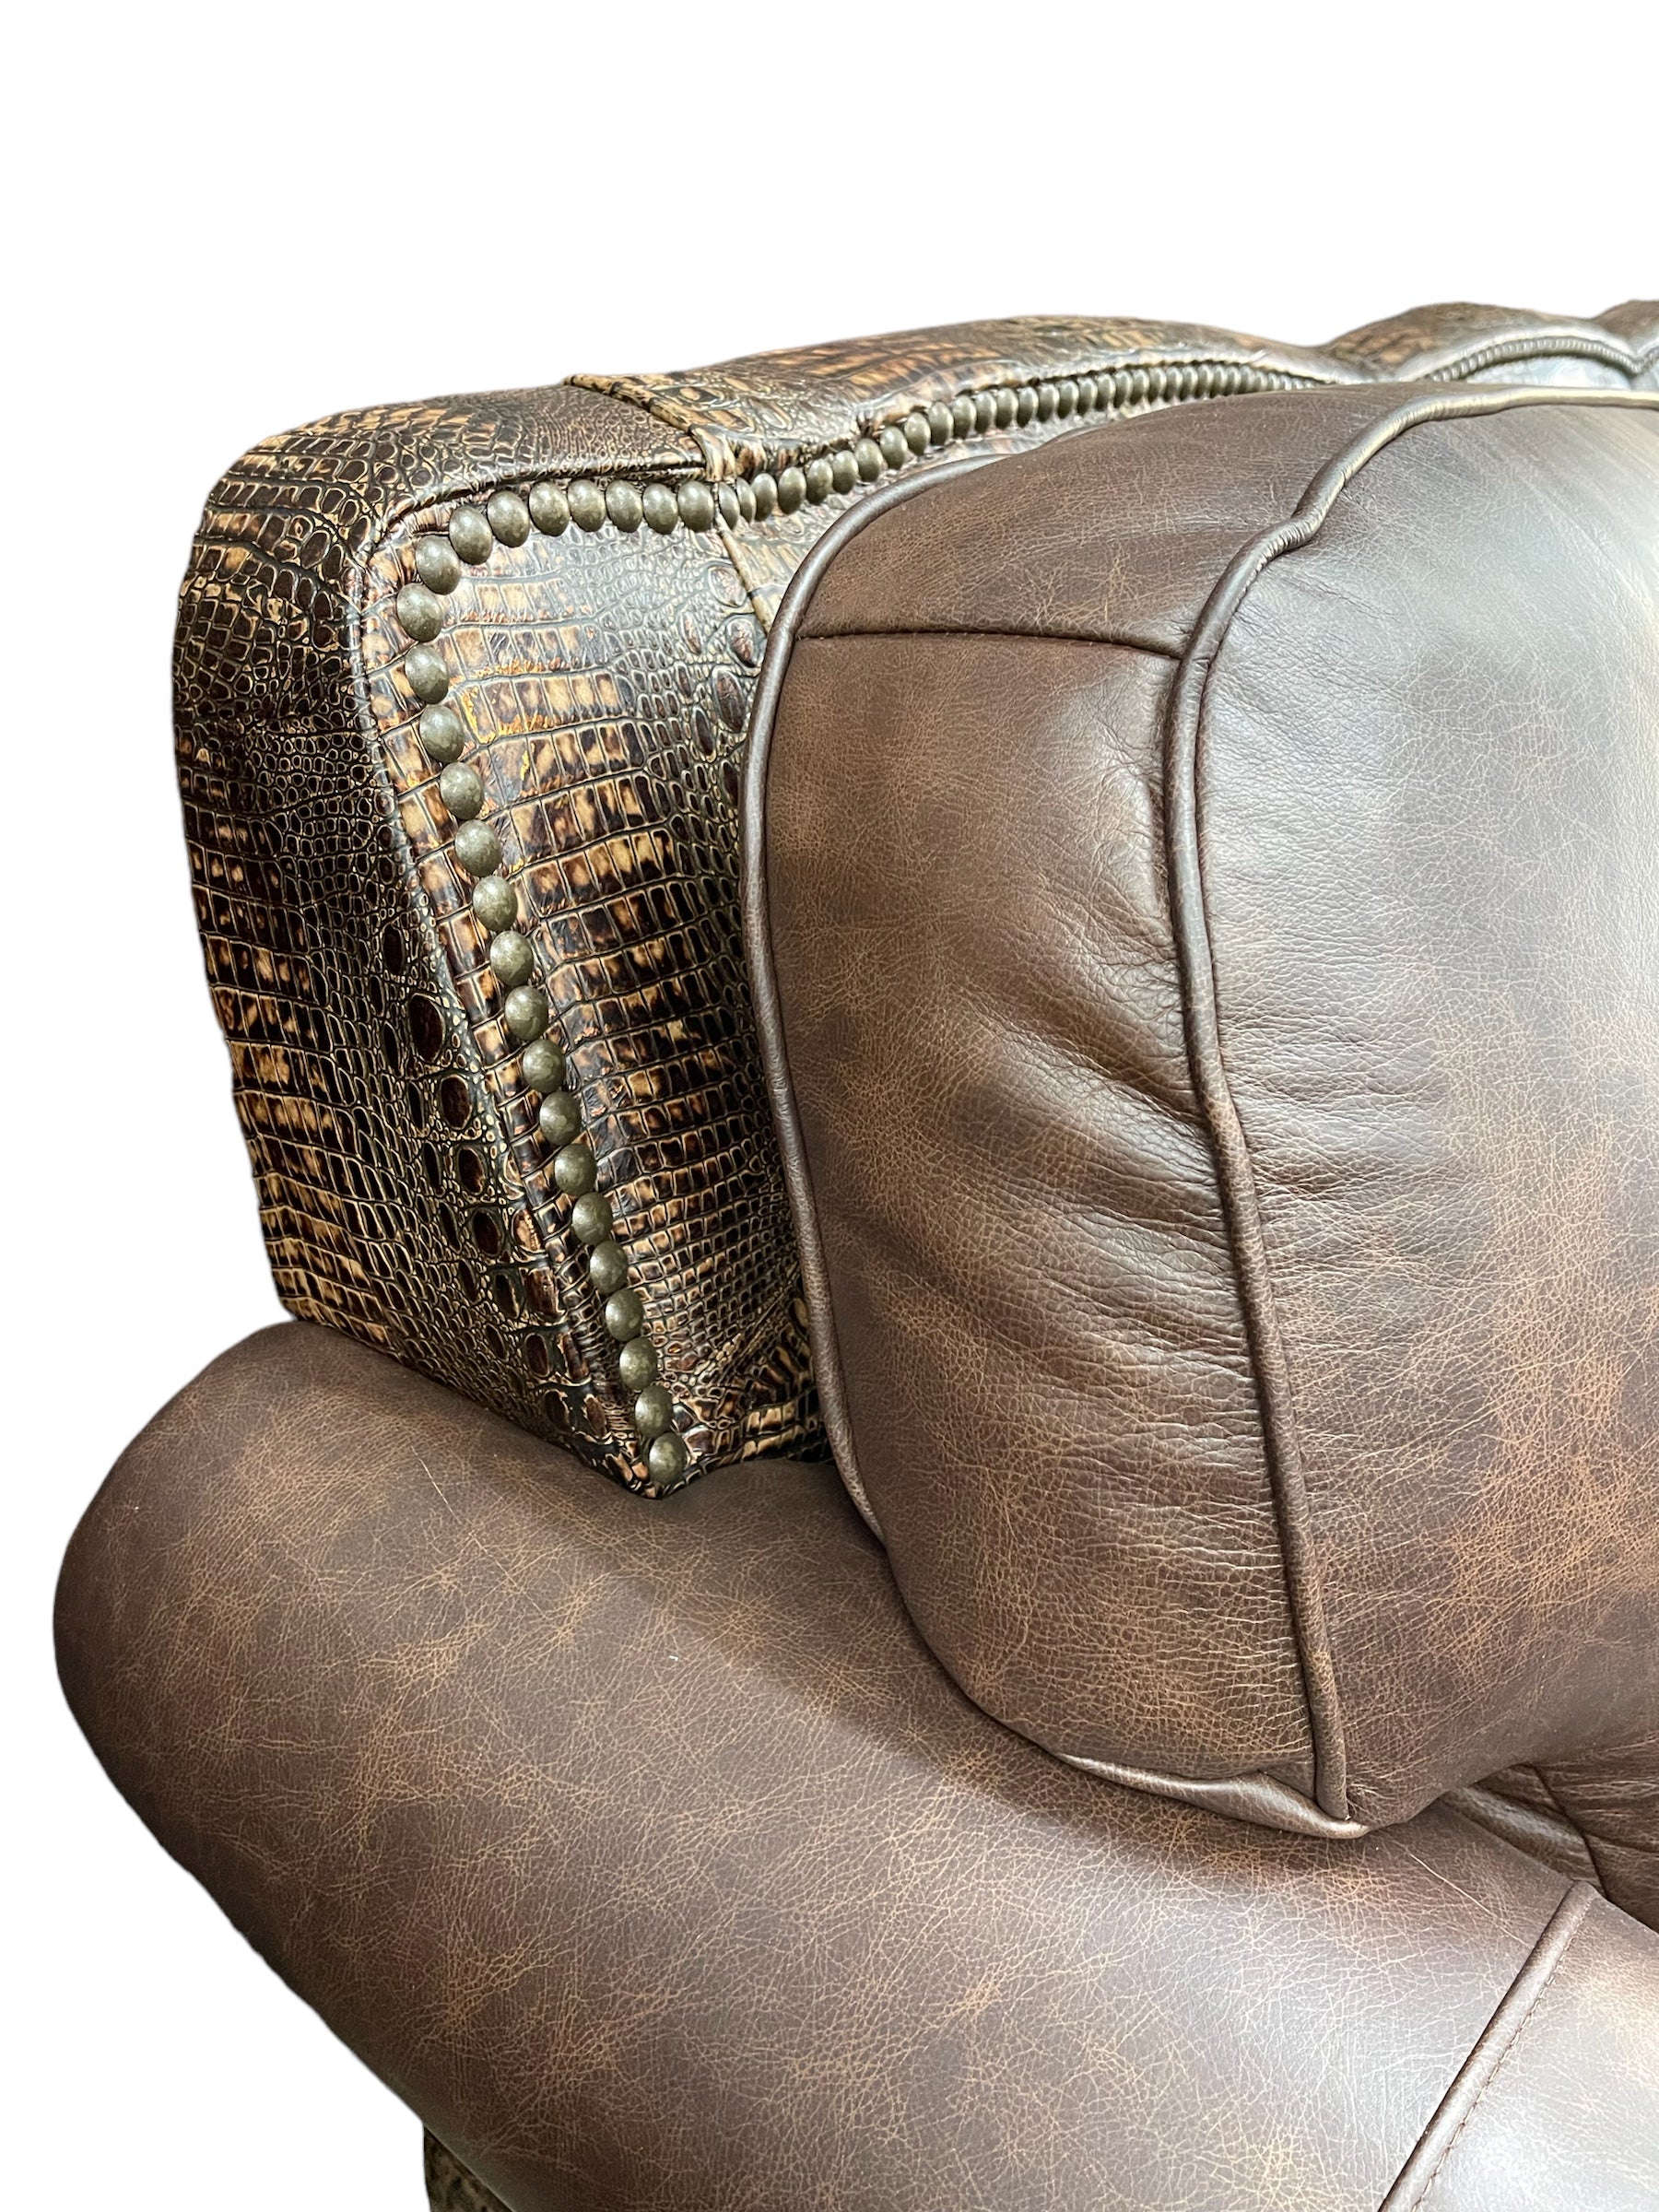 Custom Silverado Sofa in Fargo Brown and Copper Gator Leather